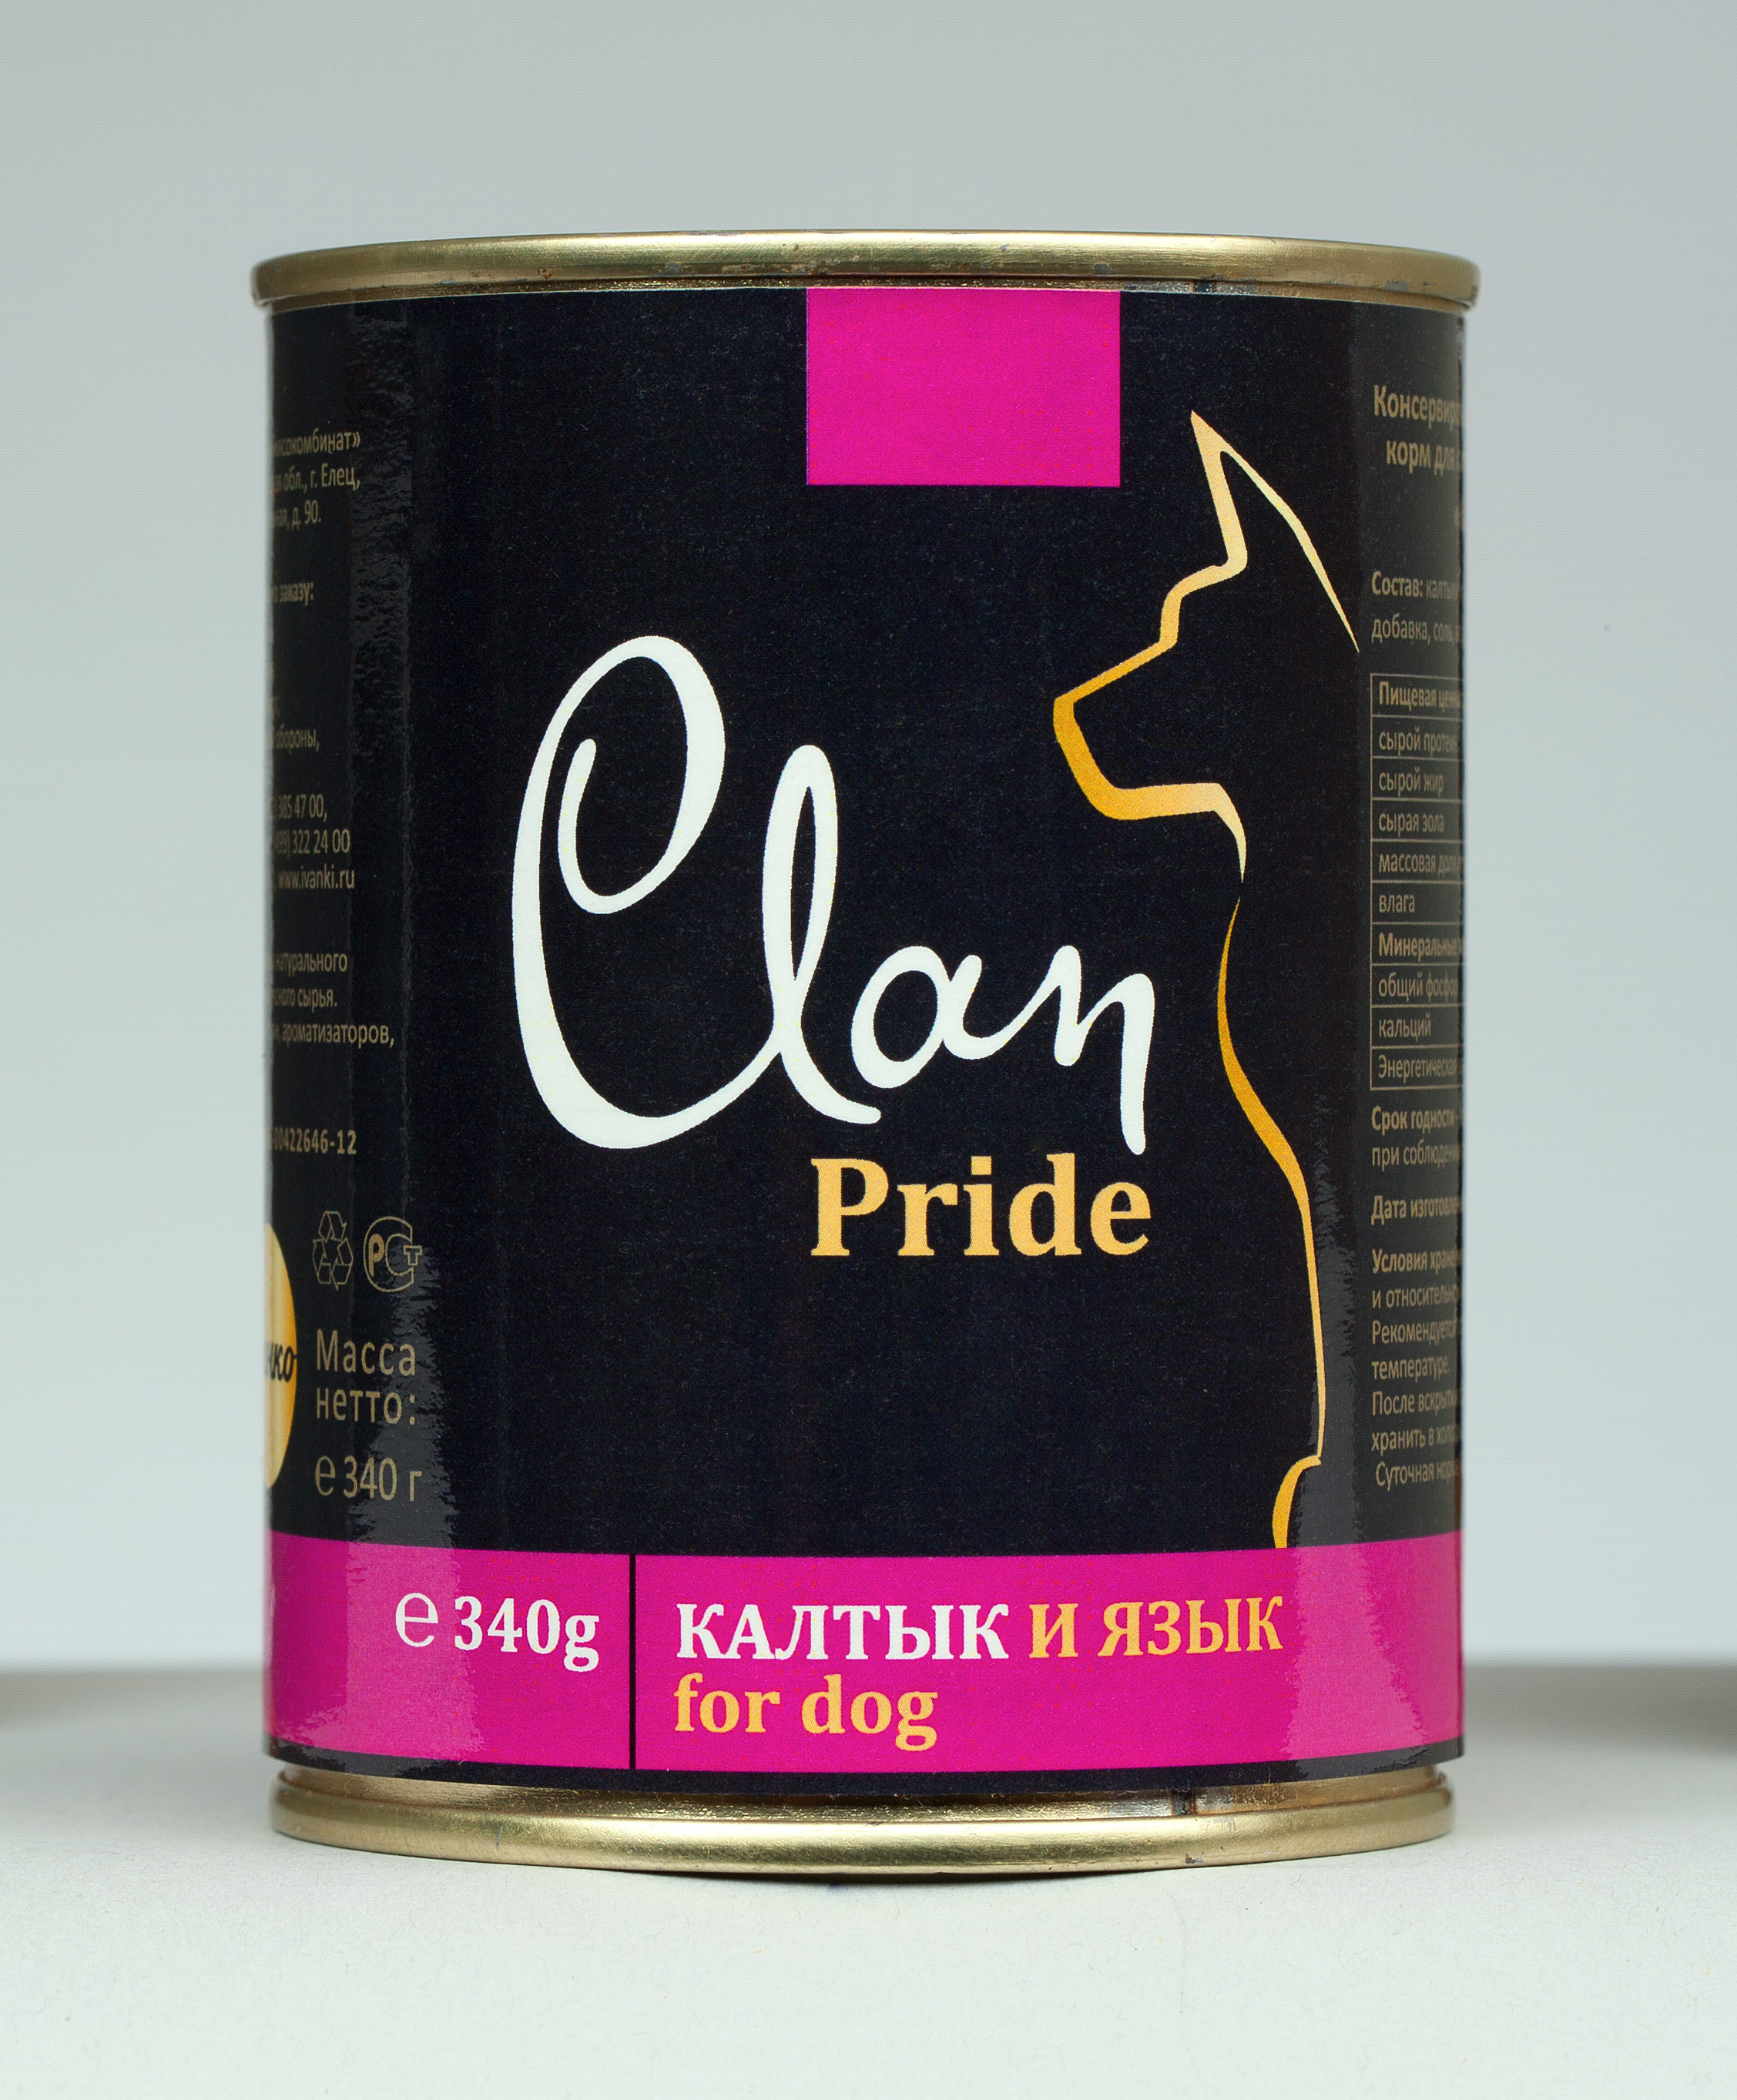 Clan консервы. Клан Прайд консервы для собак. Clan Pride влажный корм для собак. Корм для собак консервы. Консервы клан для собак.